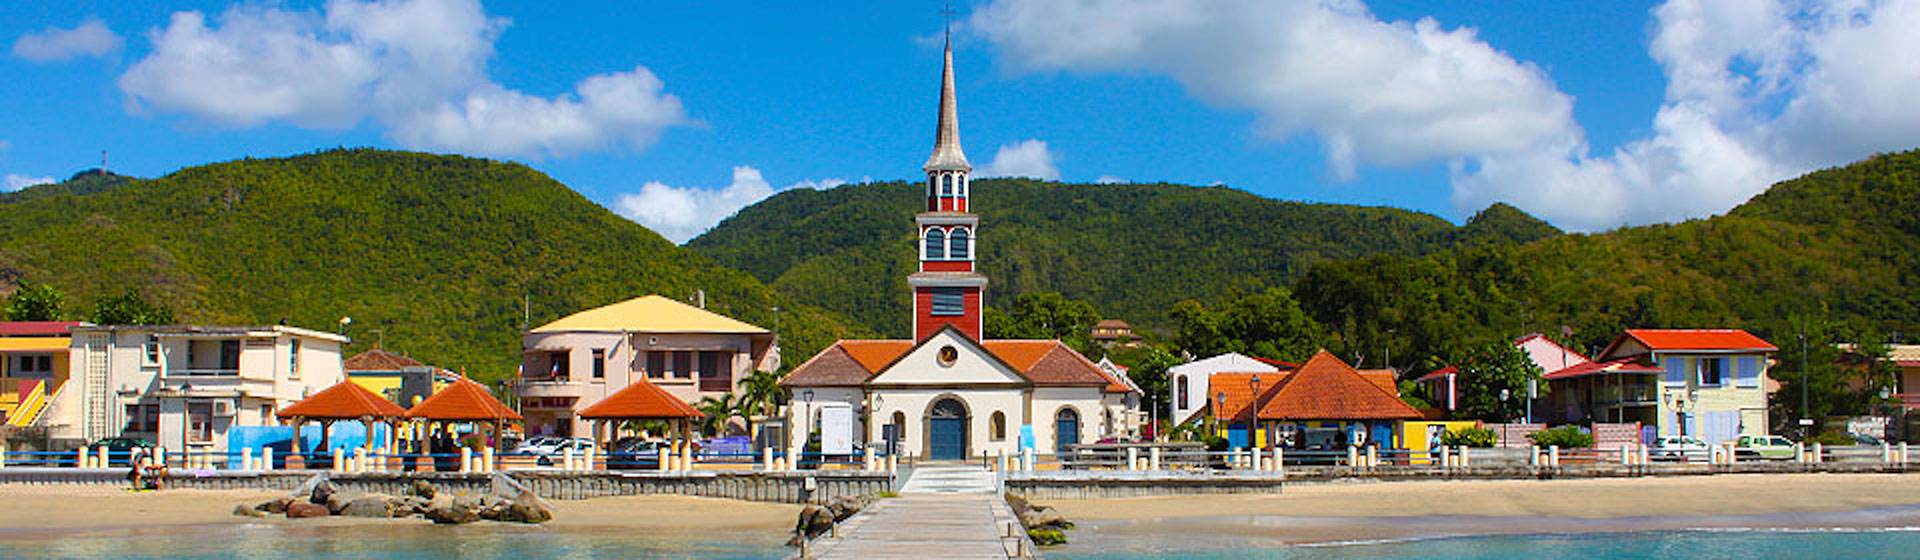 La arquitectura de Martinica revela mucho sobre la historia de la isla. (Martinica Turismo)